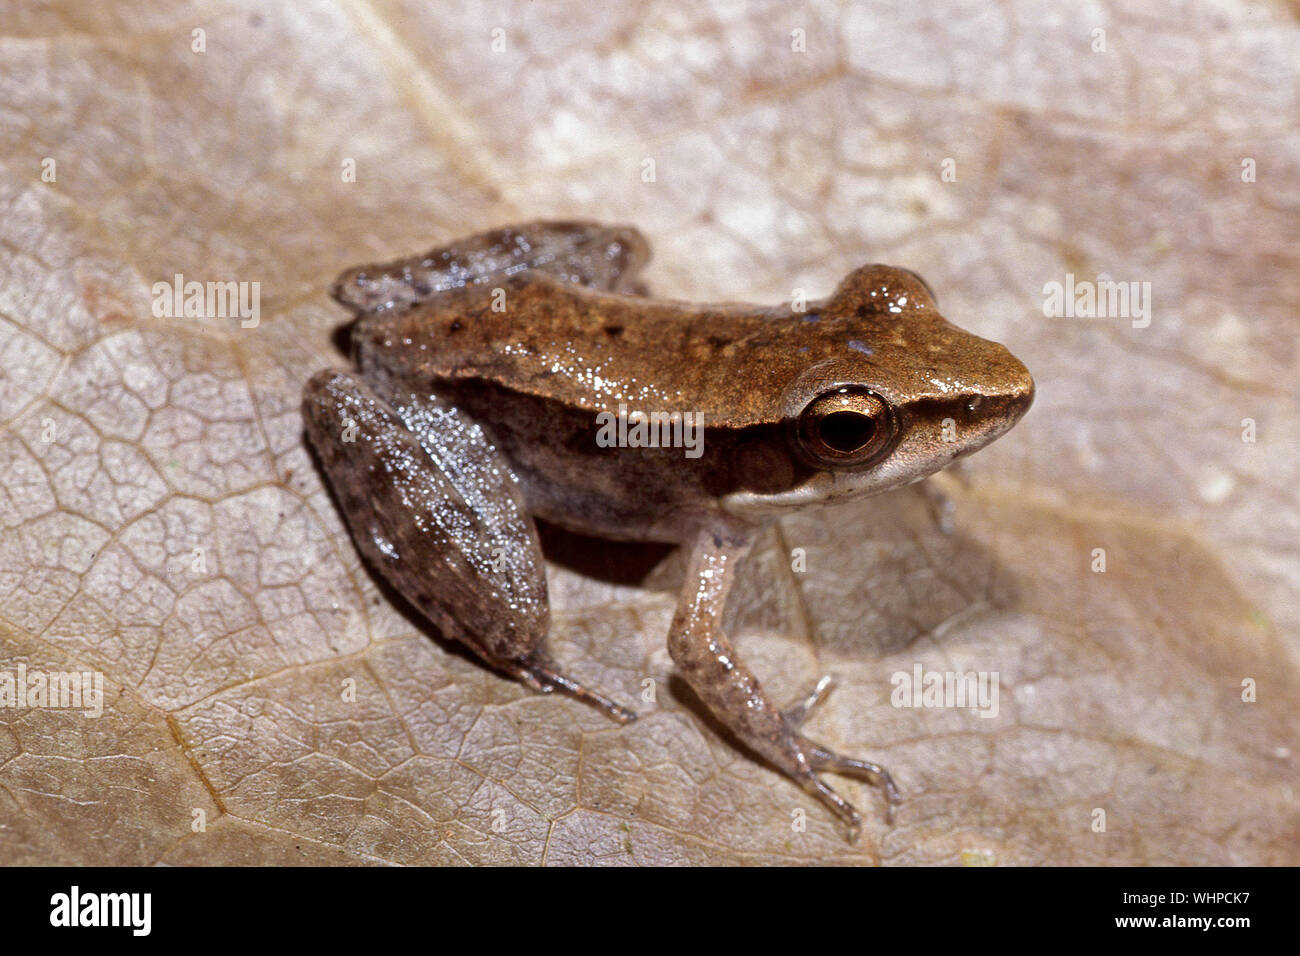 Australian Wood Frog Stock Photo